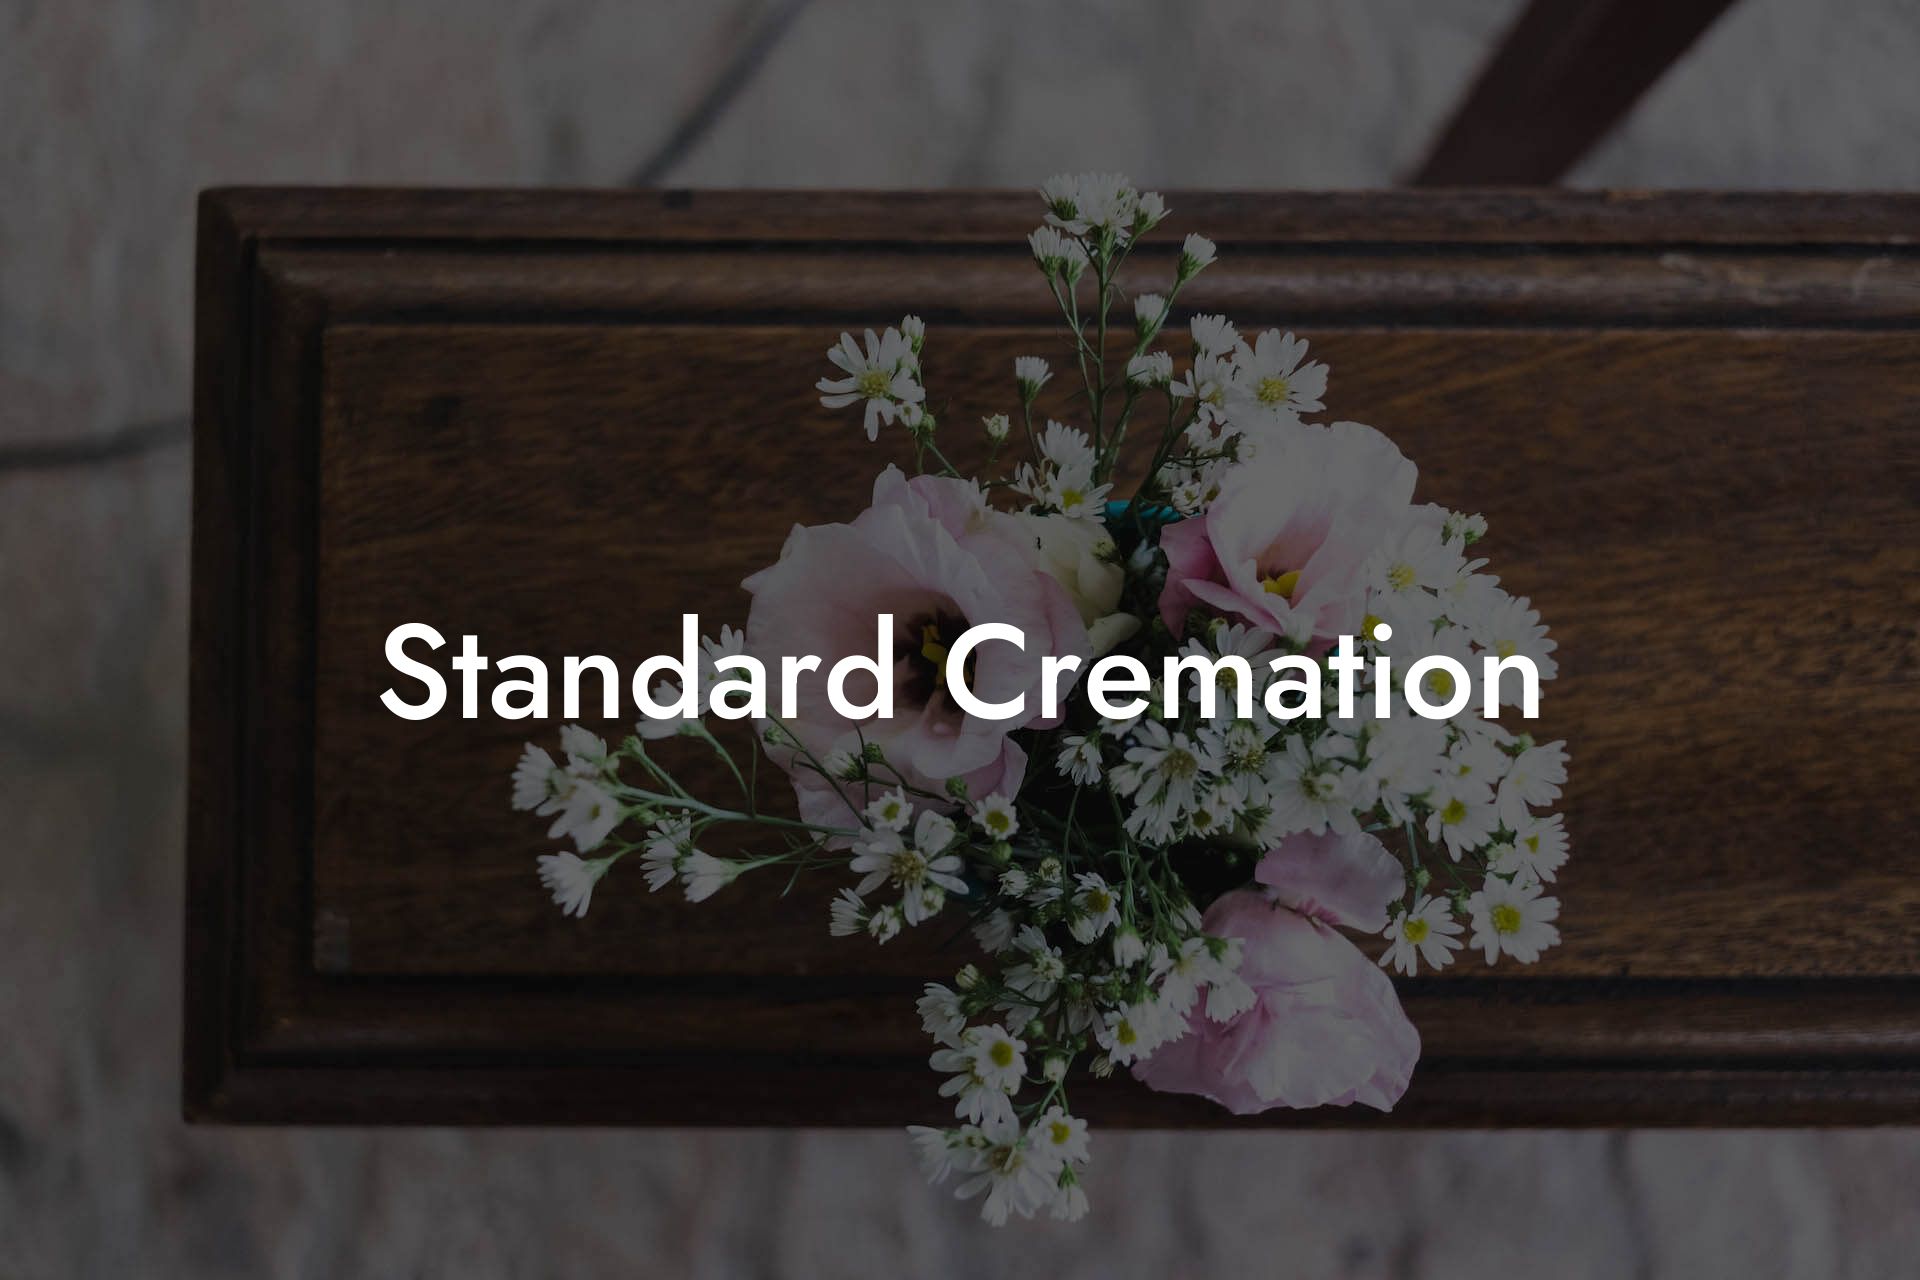 Standard Cremation